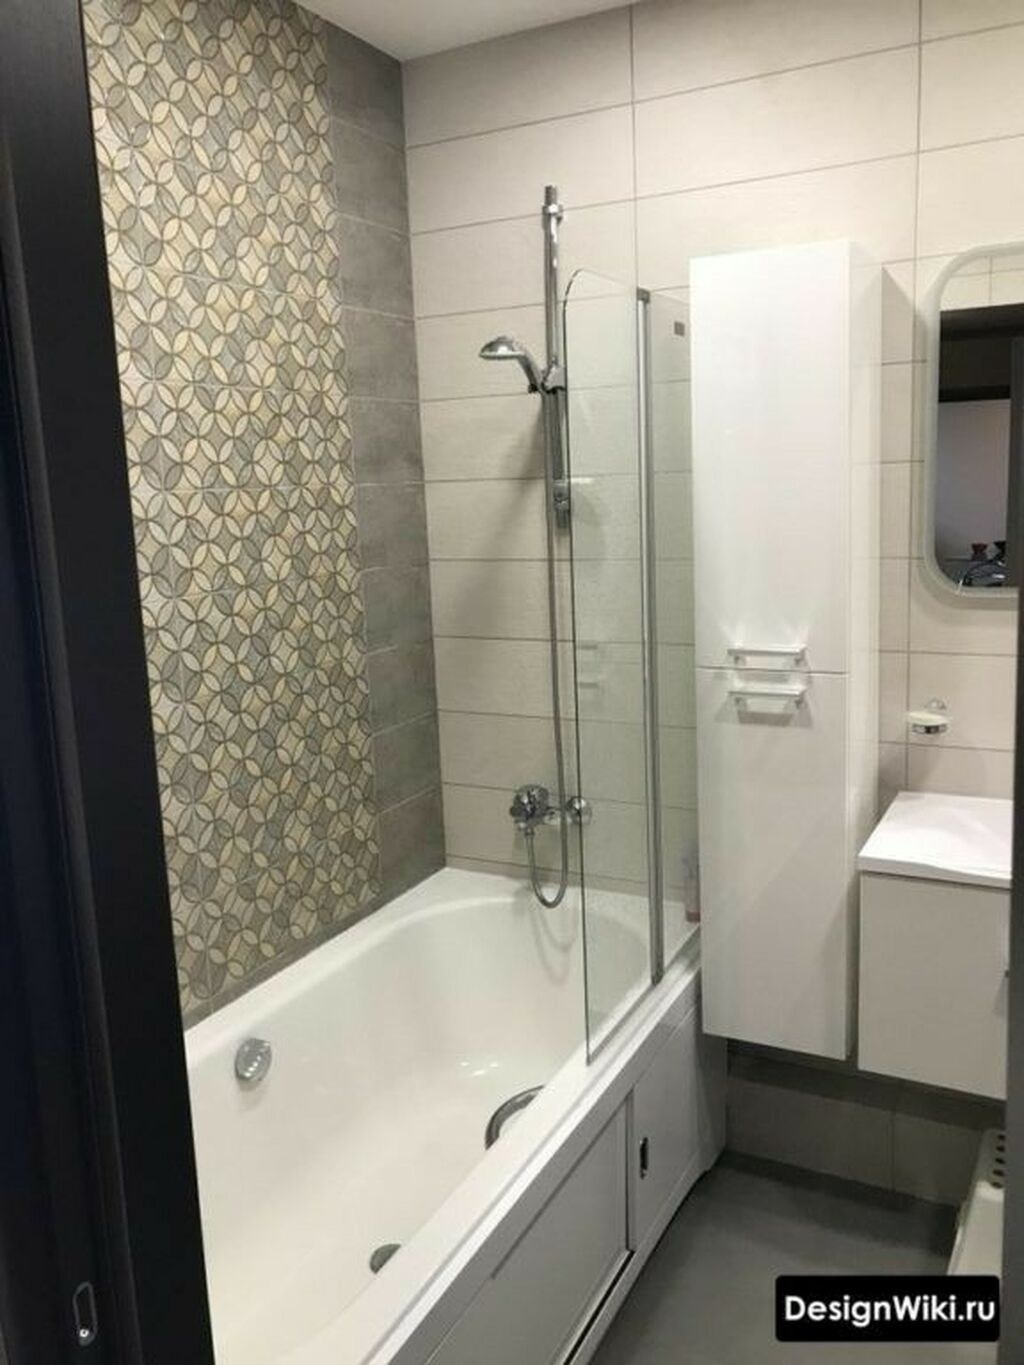 Квартиры без ванной. Маленькая ванная комната. Дизайн маленькой ванной комнаты. Ванная в малогабаритной квартире. Плитка для ванной в однокомнатной квартире.